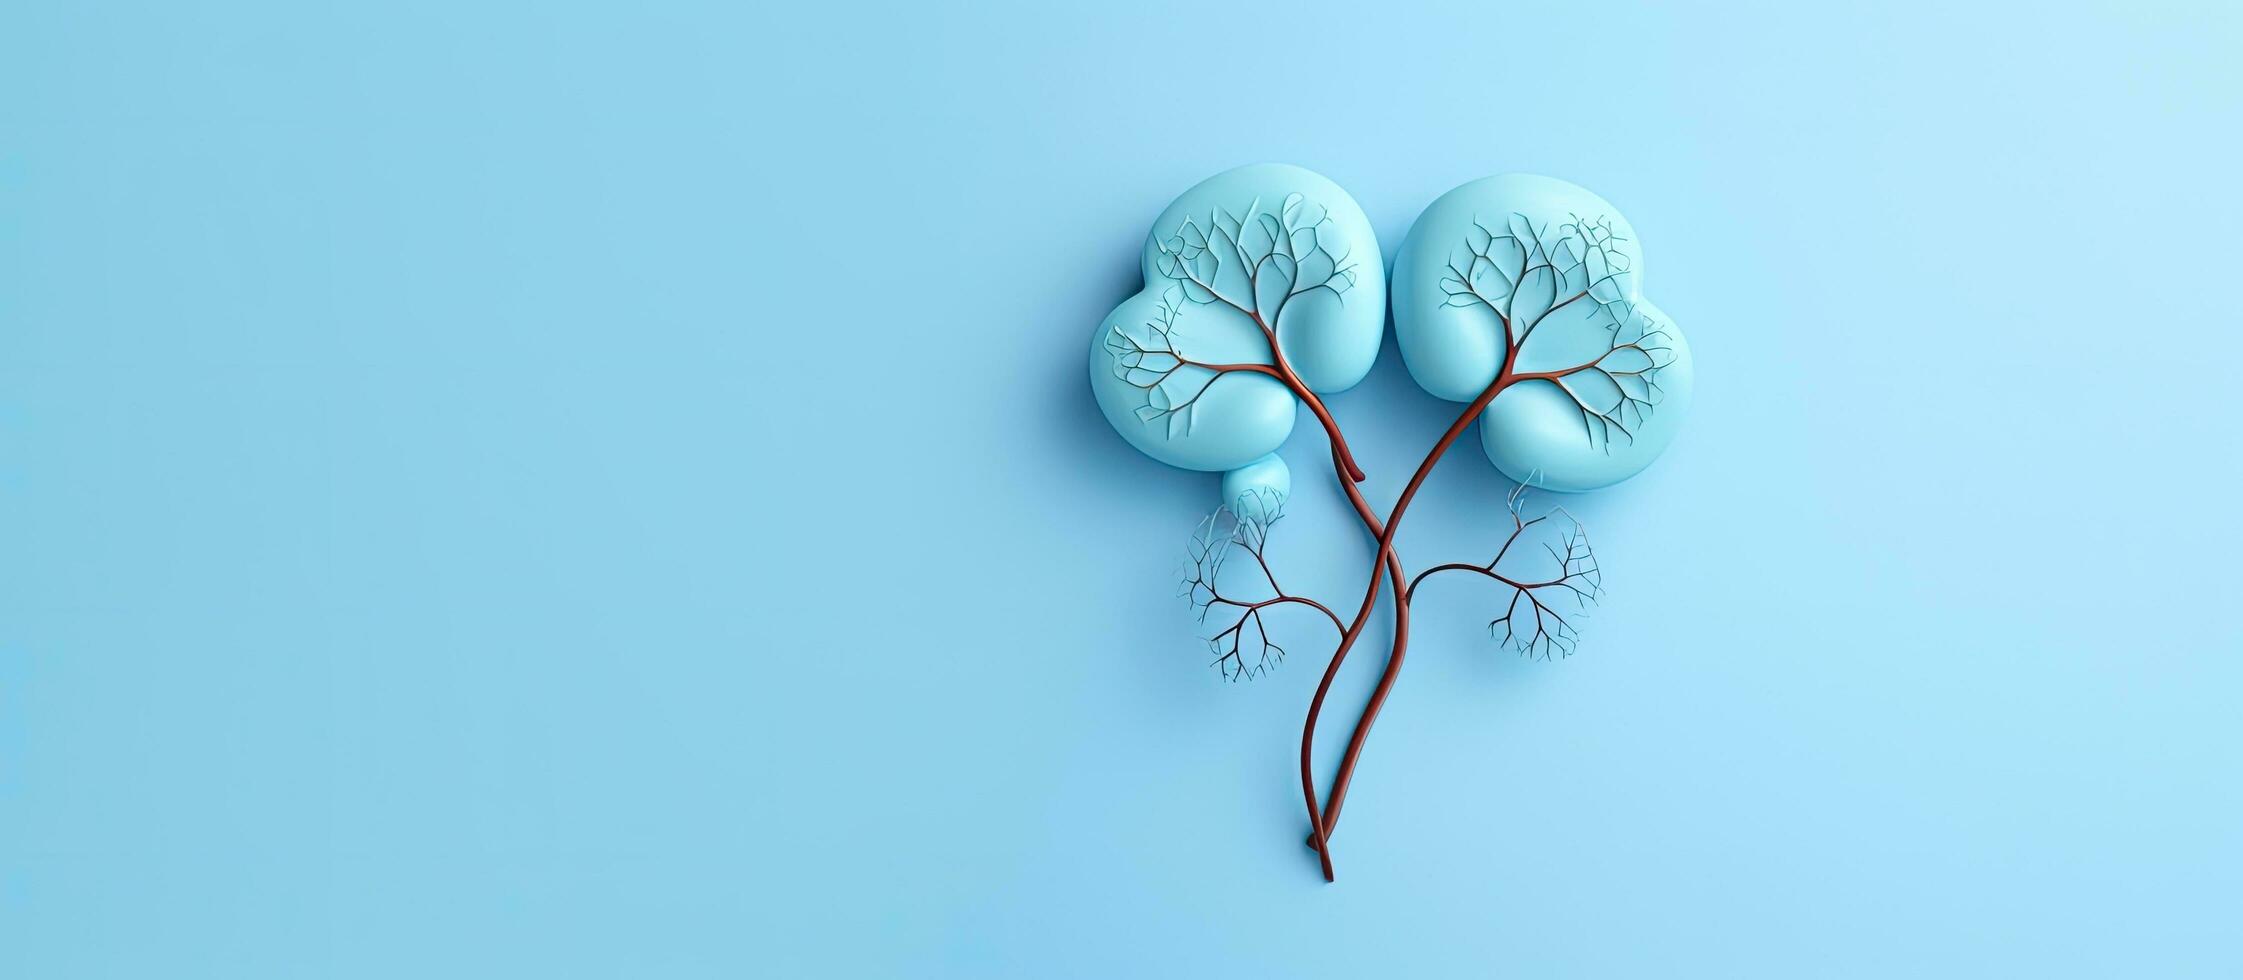 un decorativo modelo de humano riñones es metido en un pastel azul antecedentes. el concepto representa foto